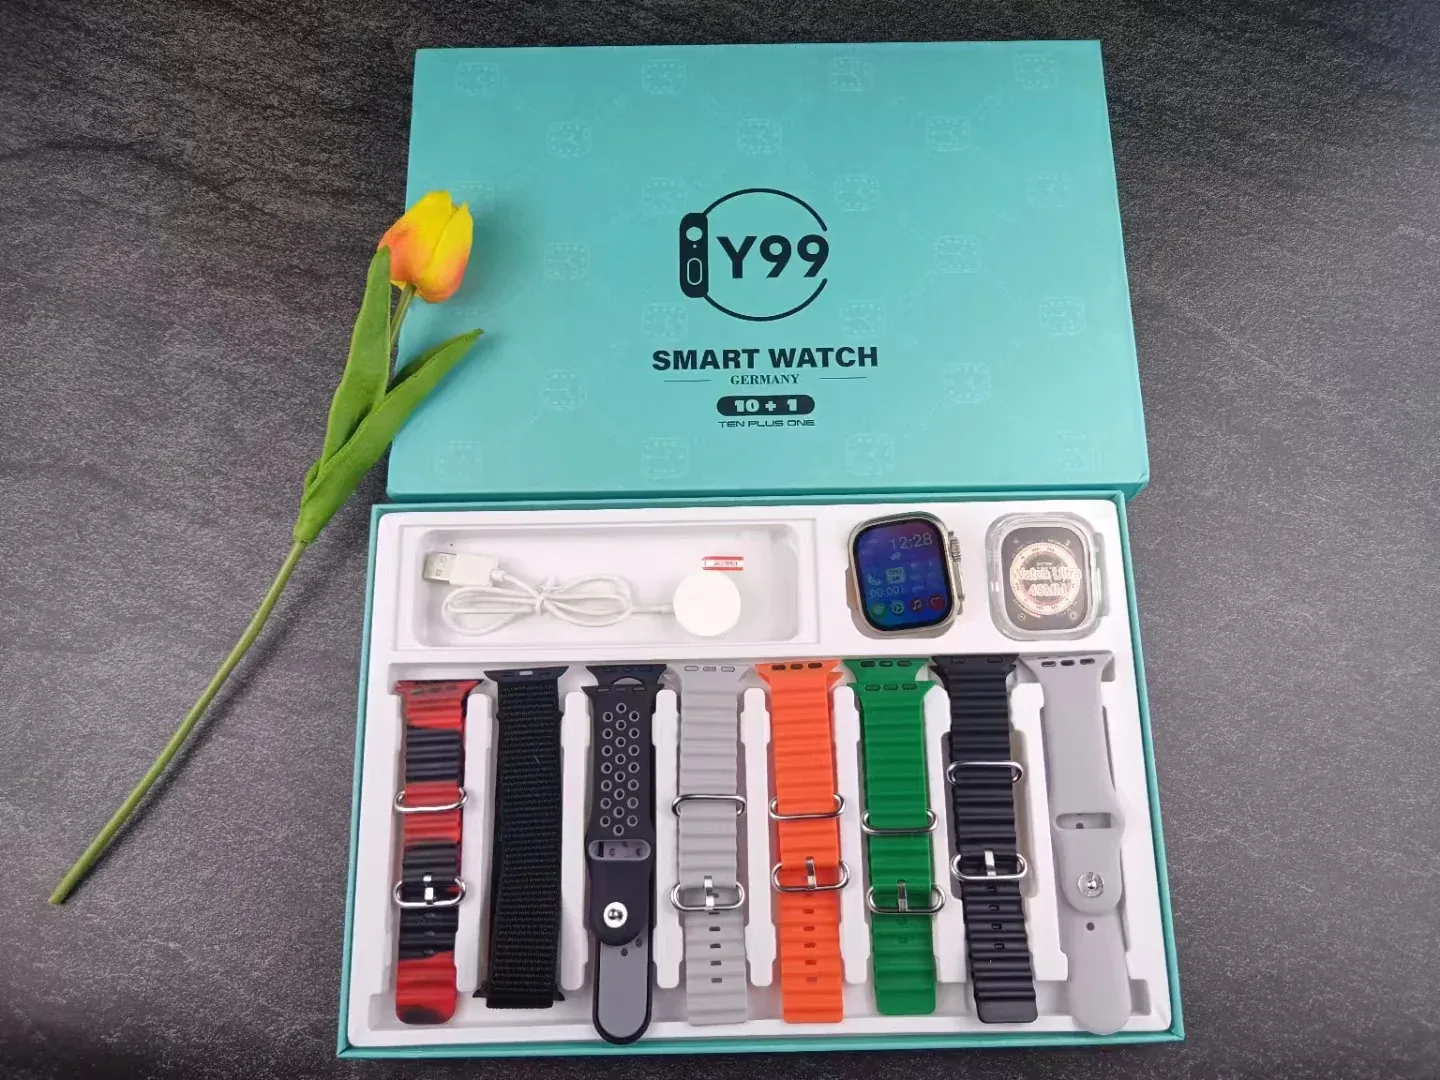 Y99 Ultra 10 in 1 Smart Watch Price in Pakistan